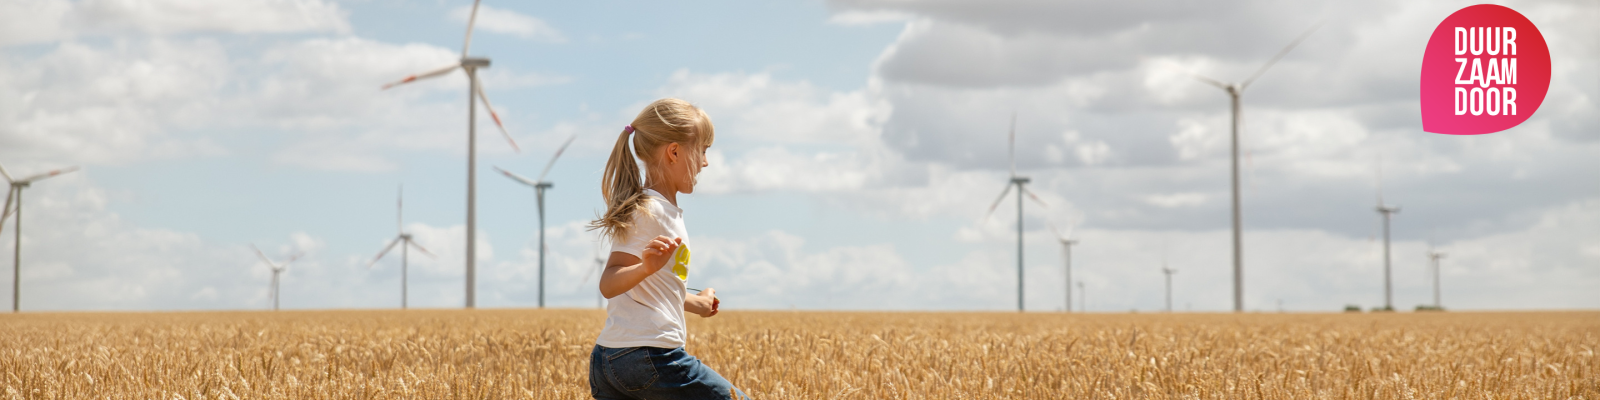 Een meisje rent door een weiland met windmolens